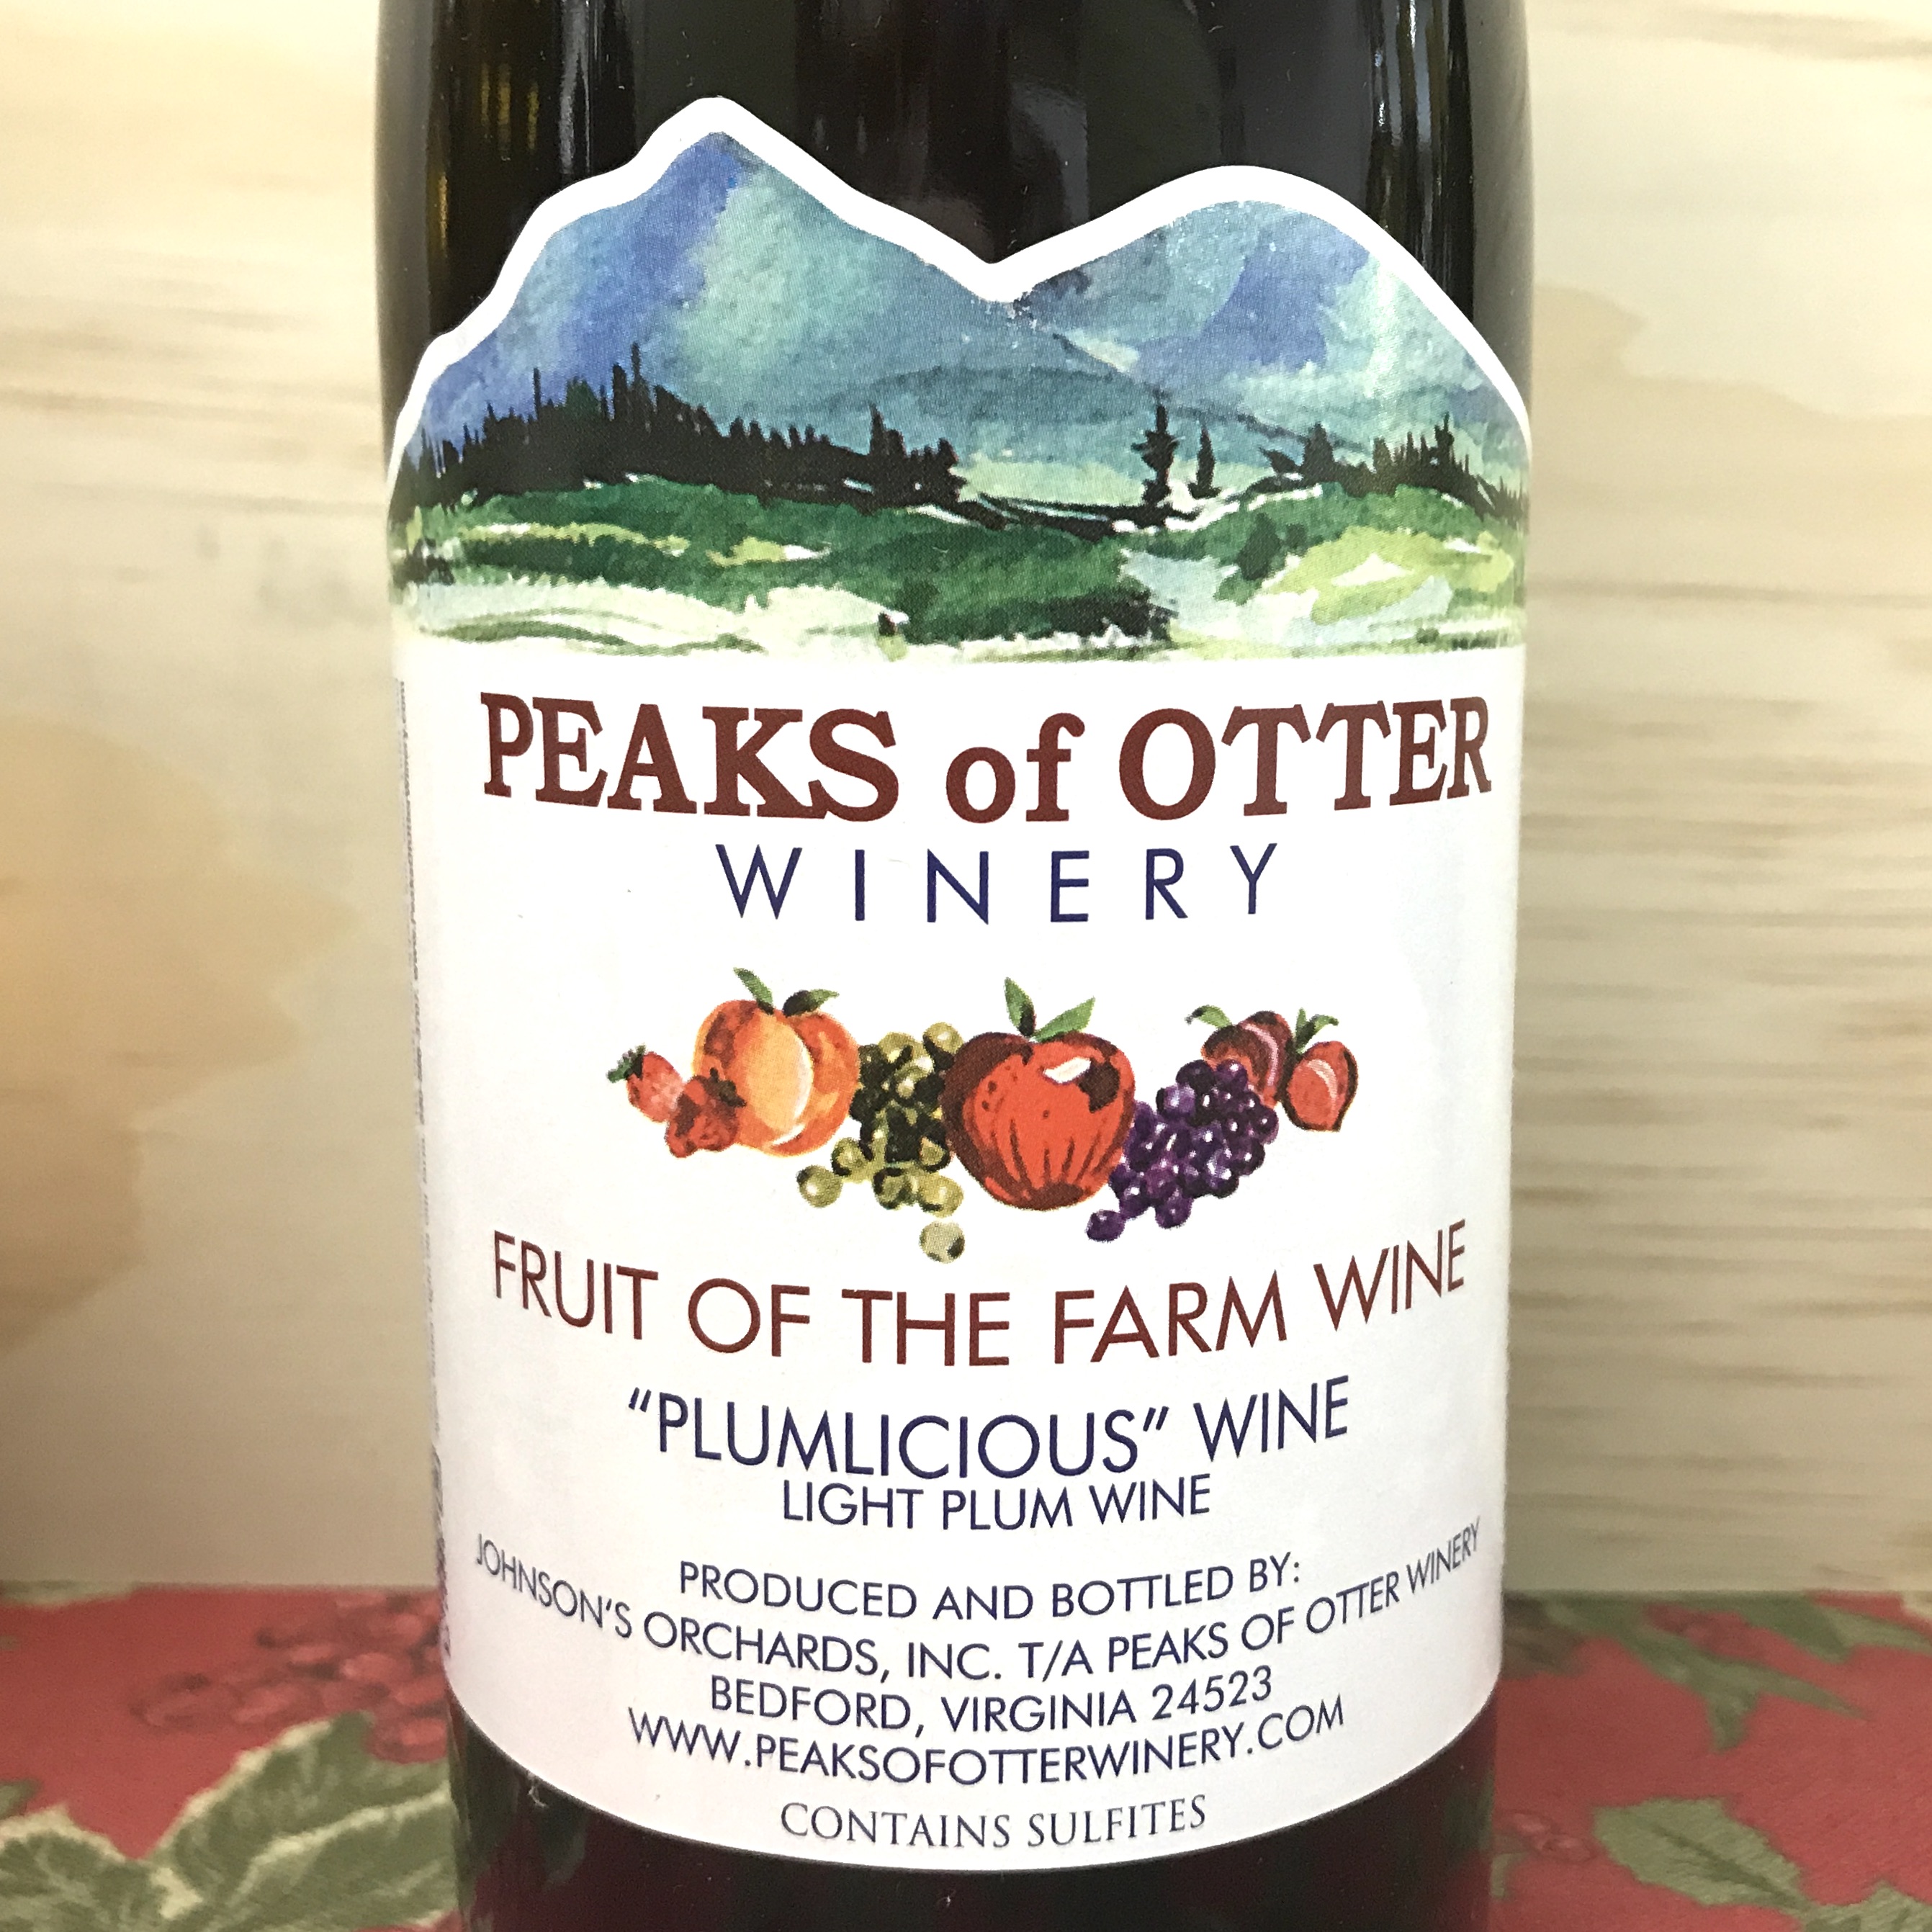 Peaks of Otter Plumlicious Light Plum Wine